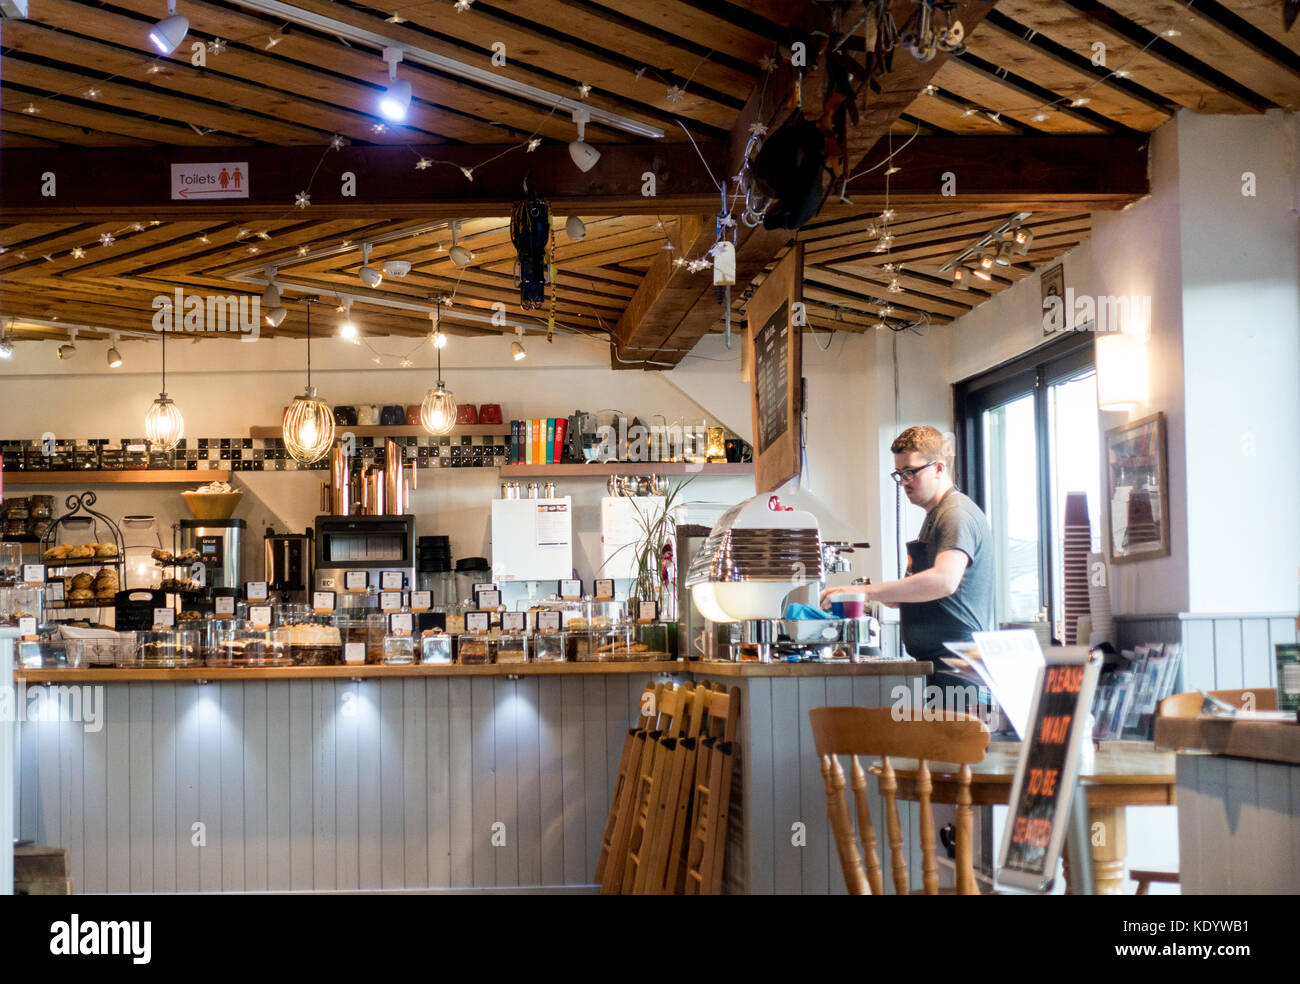 Il caffè barista presso il premiato Cafe la montagna cafe caffè dietro il contatore nella popolare cittadina turistica di Aviemore Scozia, Regno Unito Foto Stock